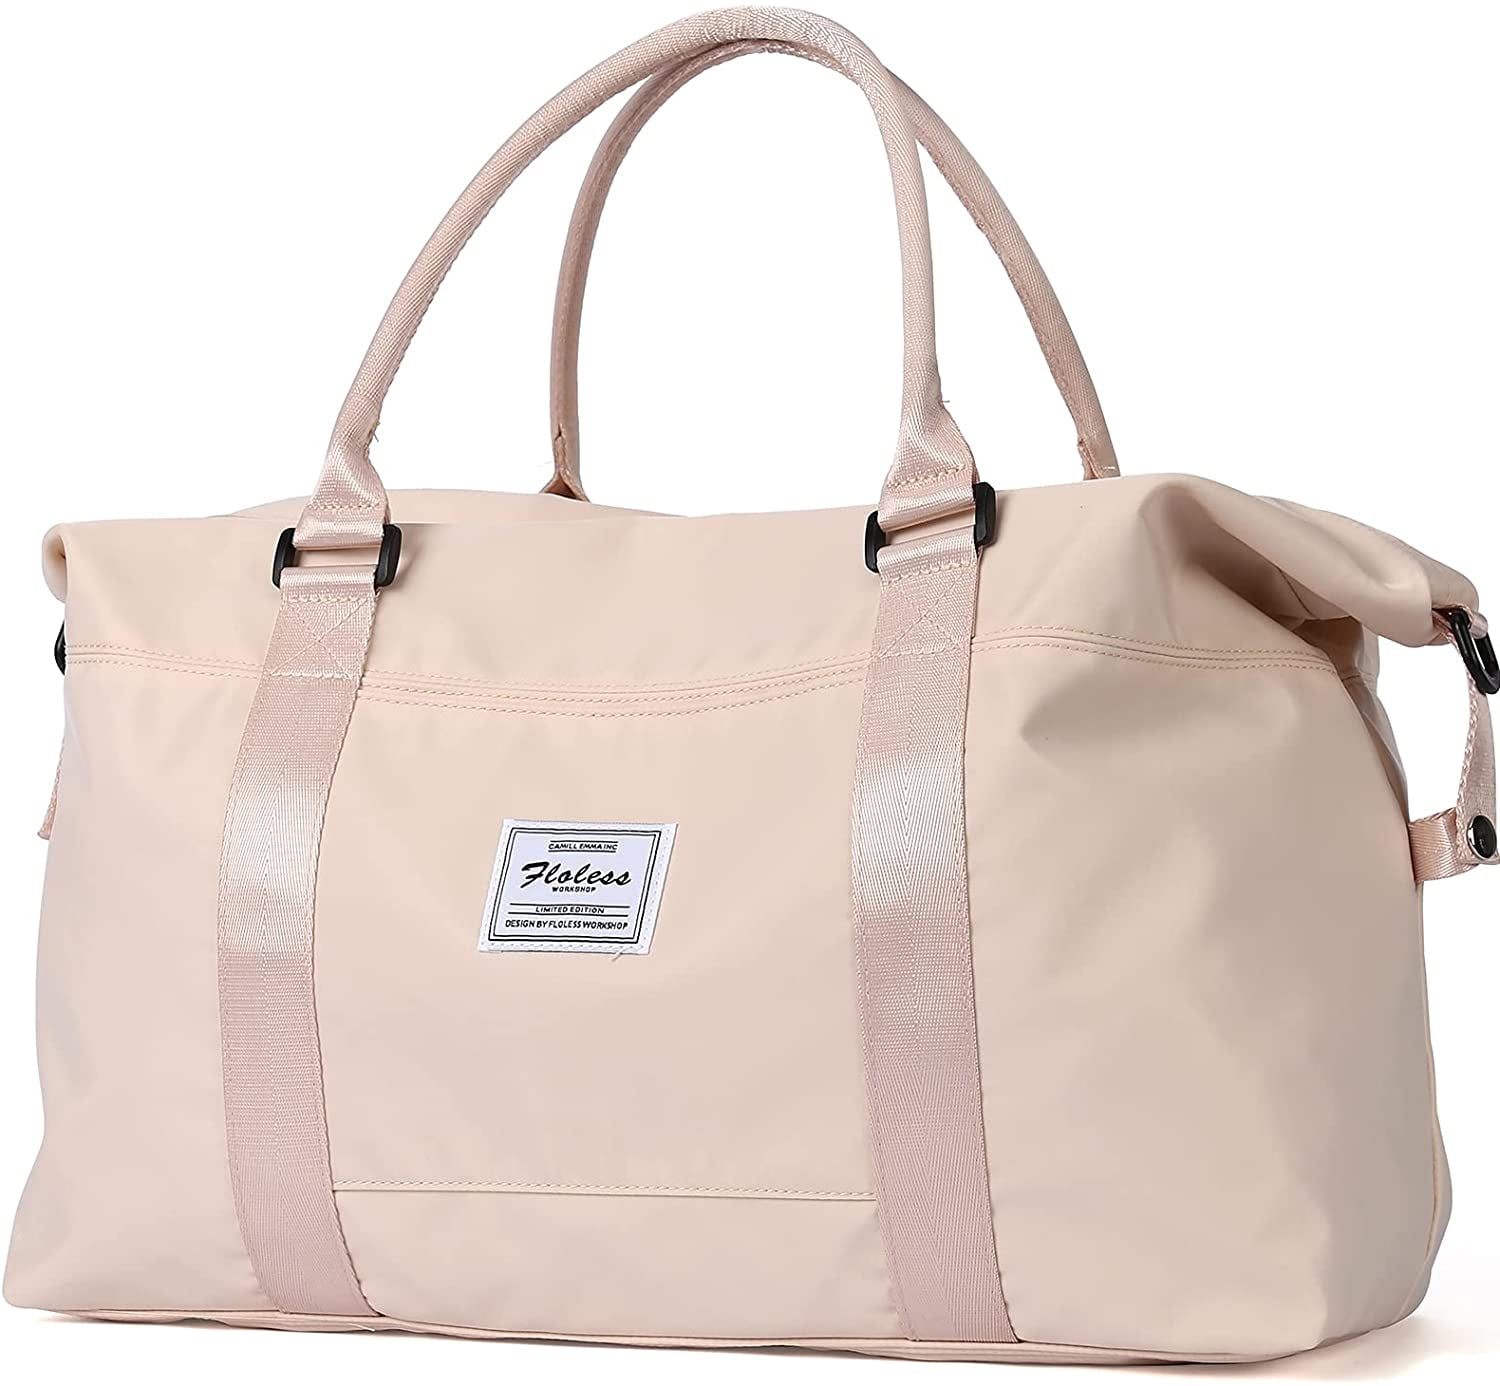 New Pink Sequins Gym bag/Duffle/Travel/weekender/overnight bag/tote,waterproof 